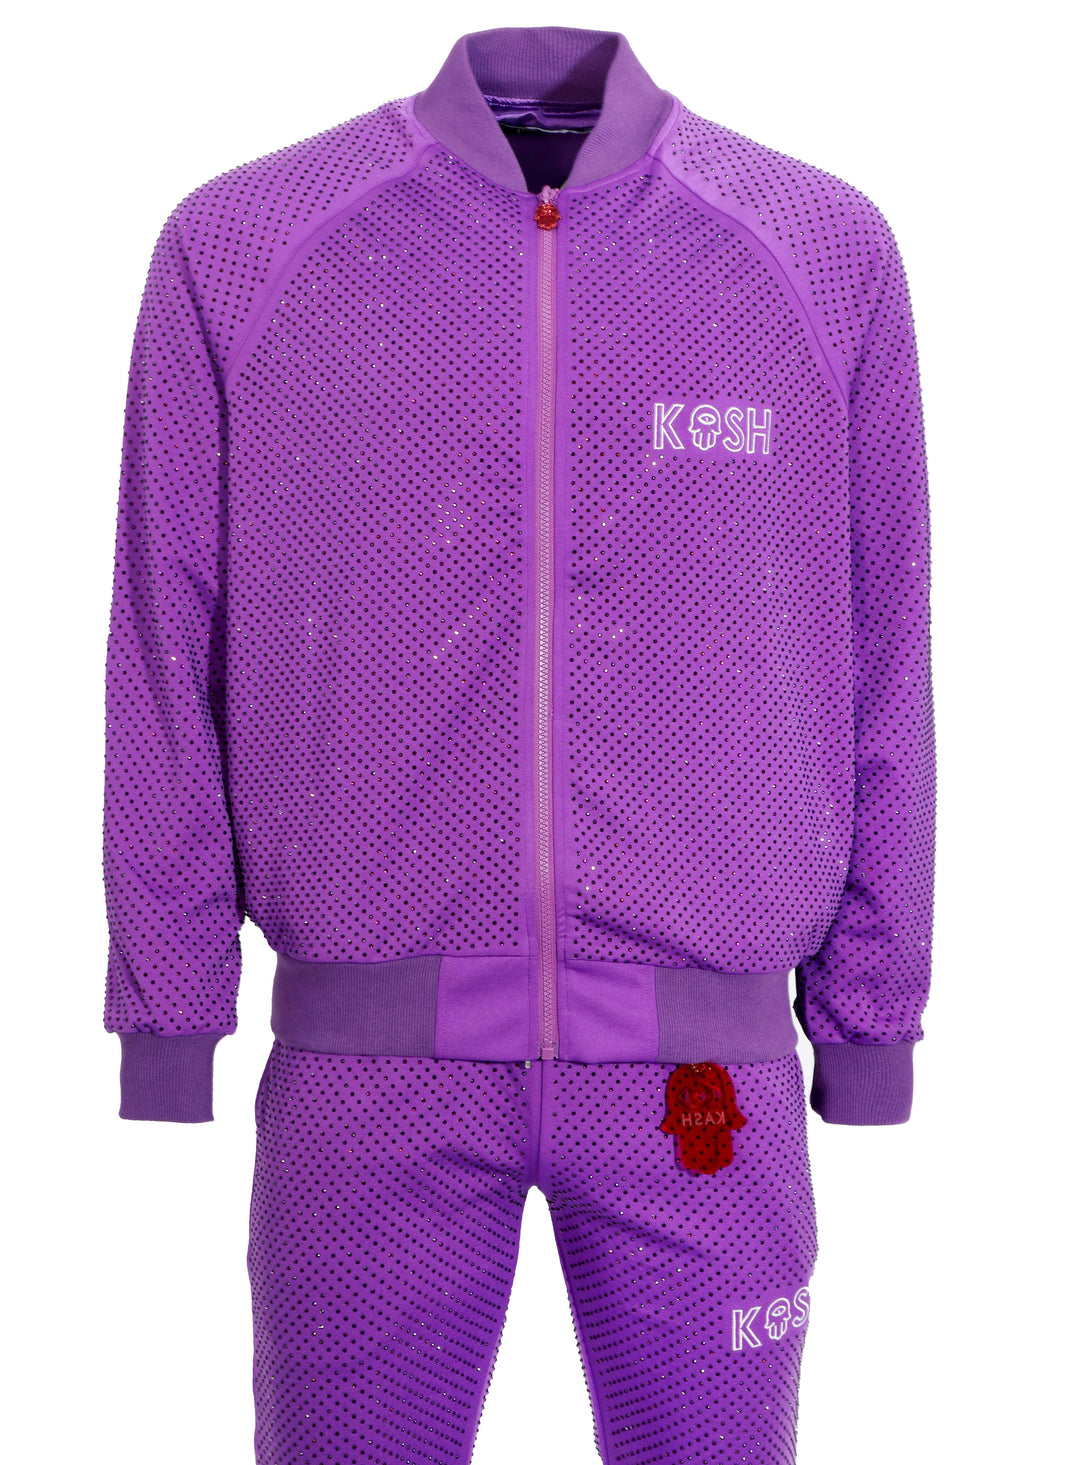 Kash All Over Diamond Track Pants- Purple